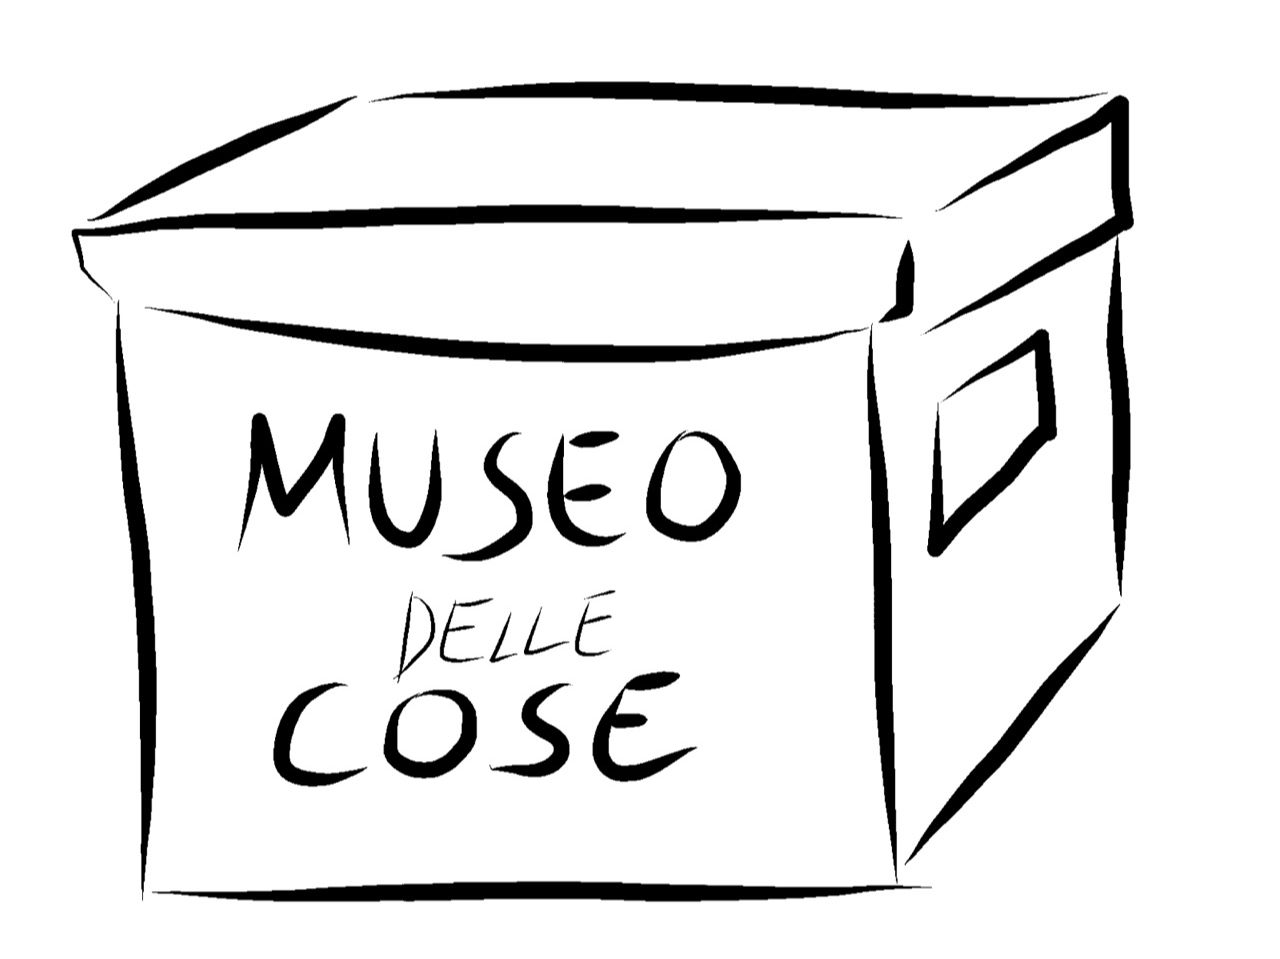 Museo delle Cose